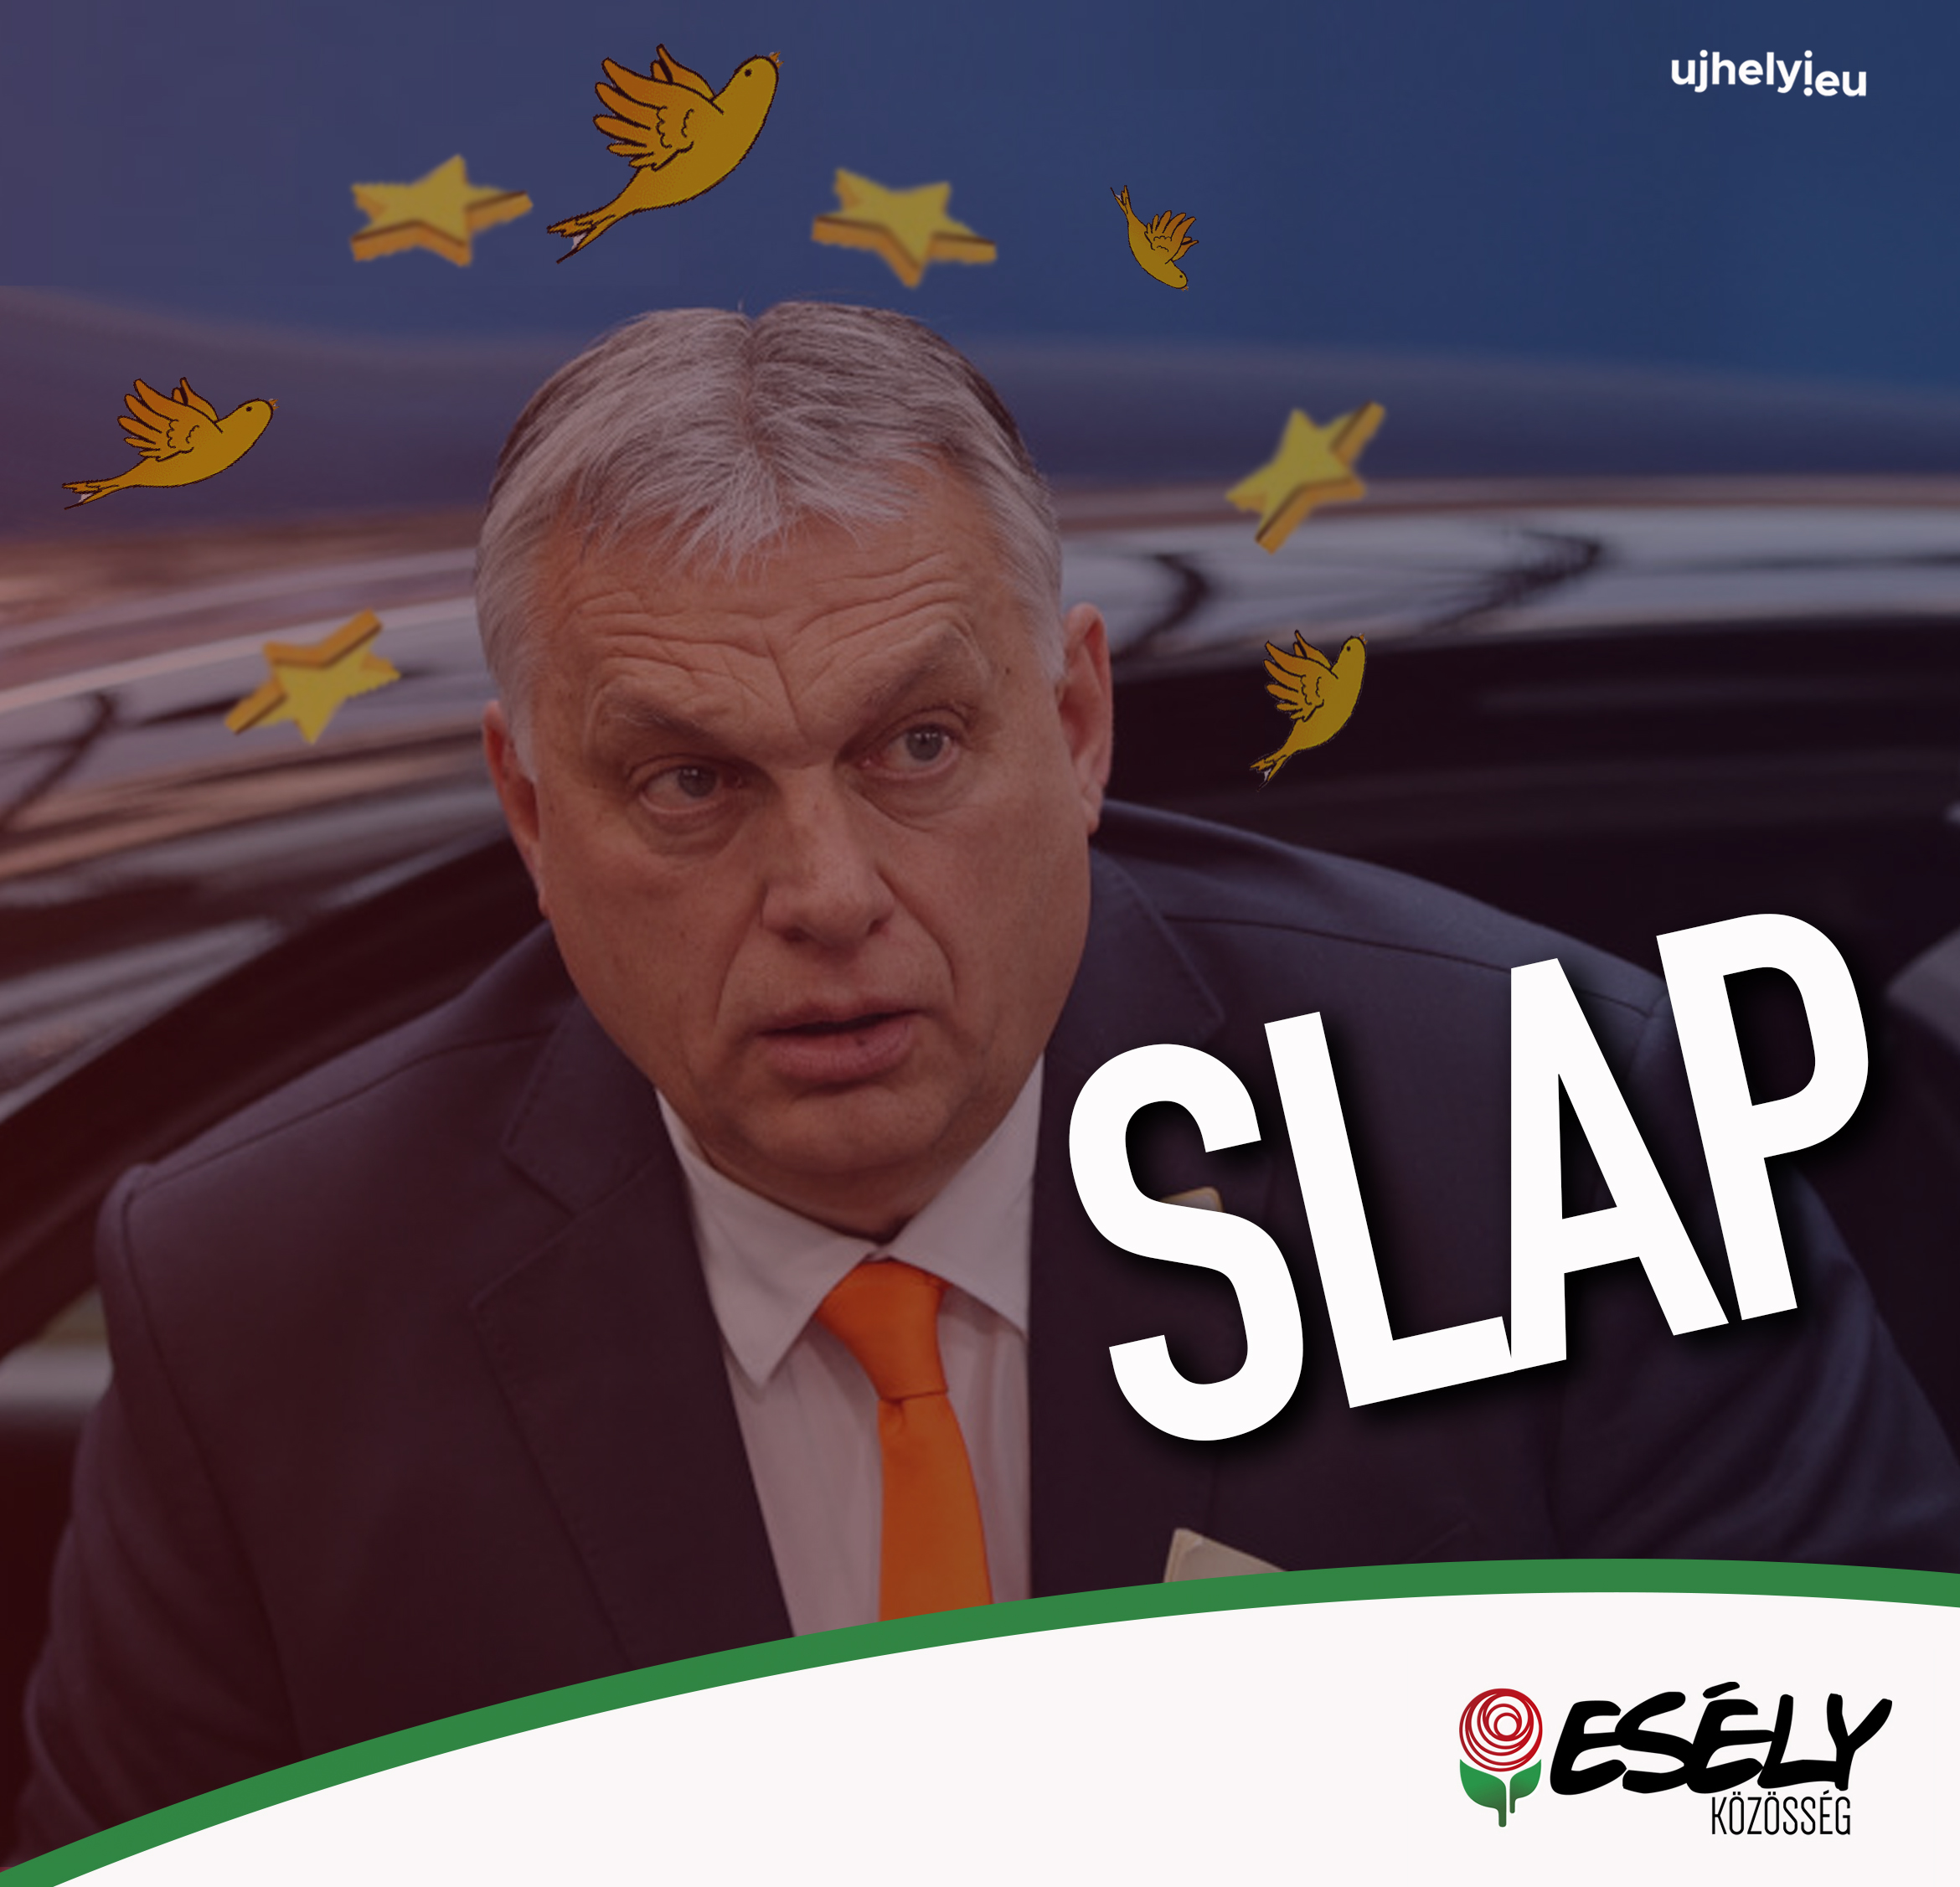 EU funds: Orbán gets dizzy from slap